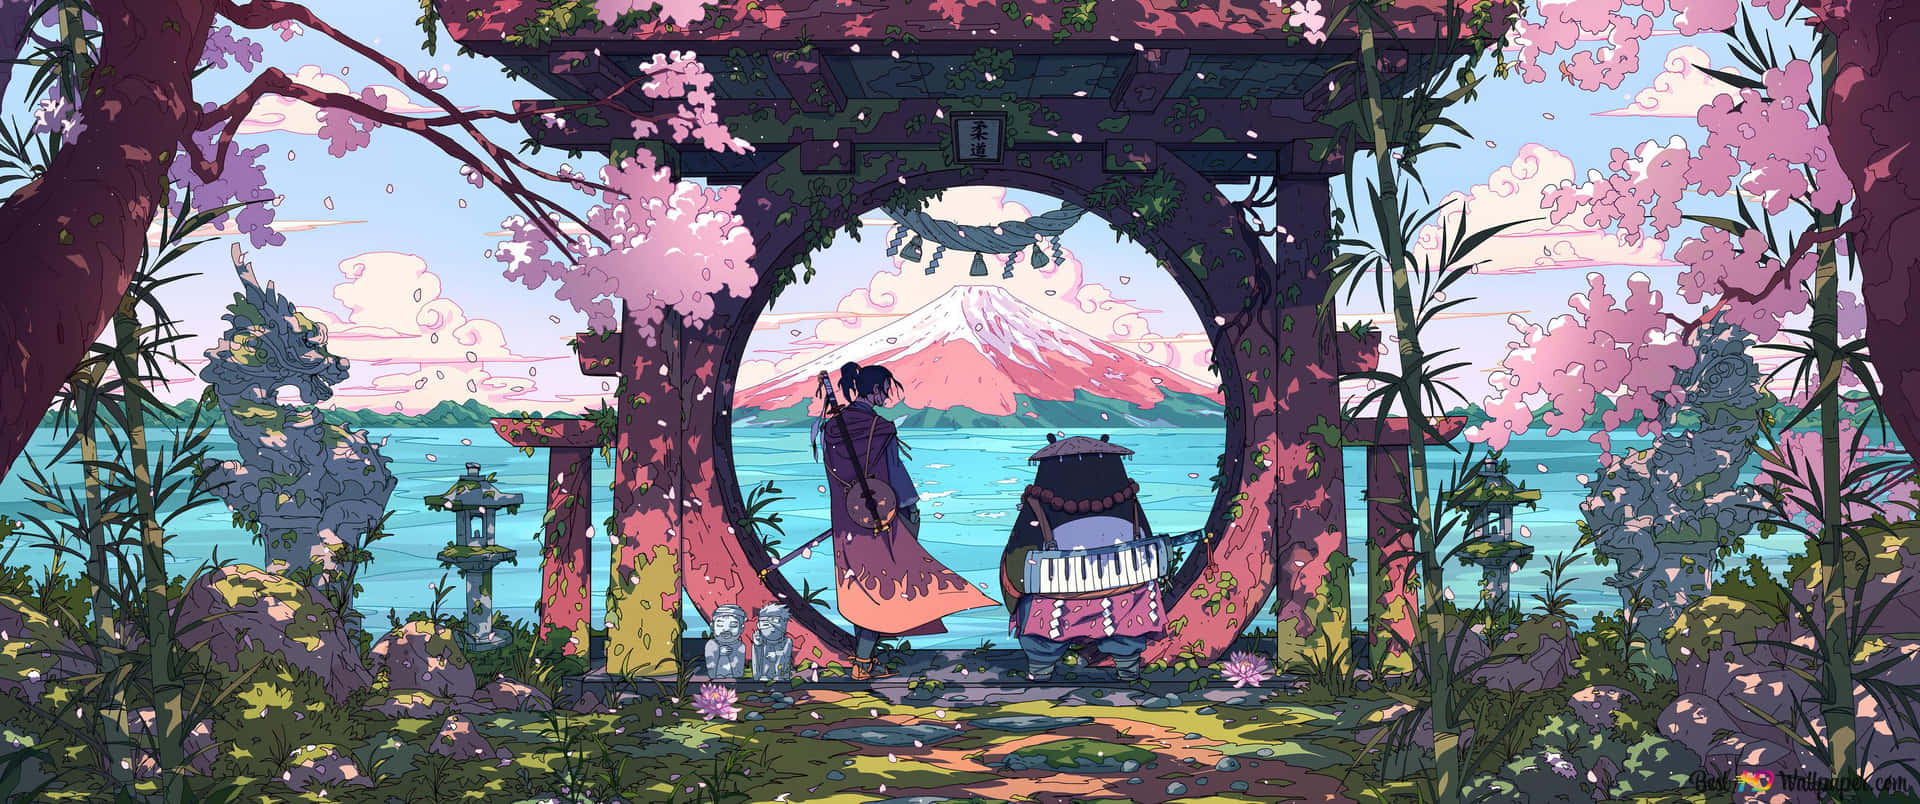 Bạn đang tìm kiếm một hình nền máy tính đẹp mắt để thư giãn sau một ngày làm việc căng thẳng? Hãy khám phá những hình nền đẹp nhất của Studio Ghibli để biến máy tính của bạn thành một tác phẩm nghệ thuật đầy màu sắc.